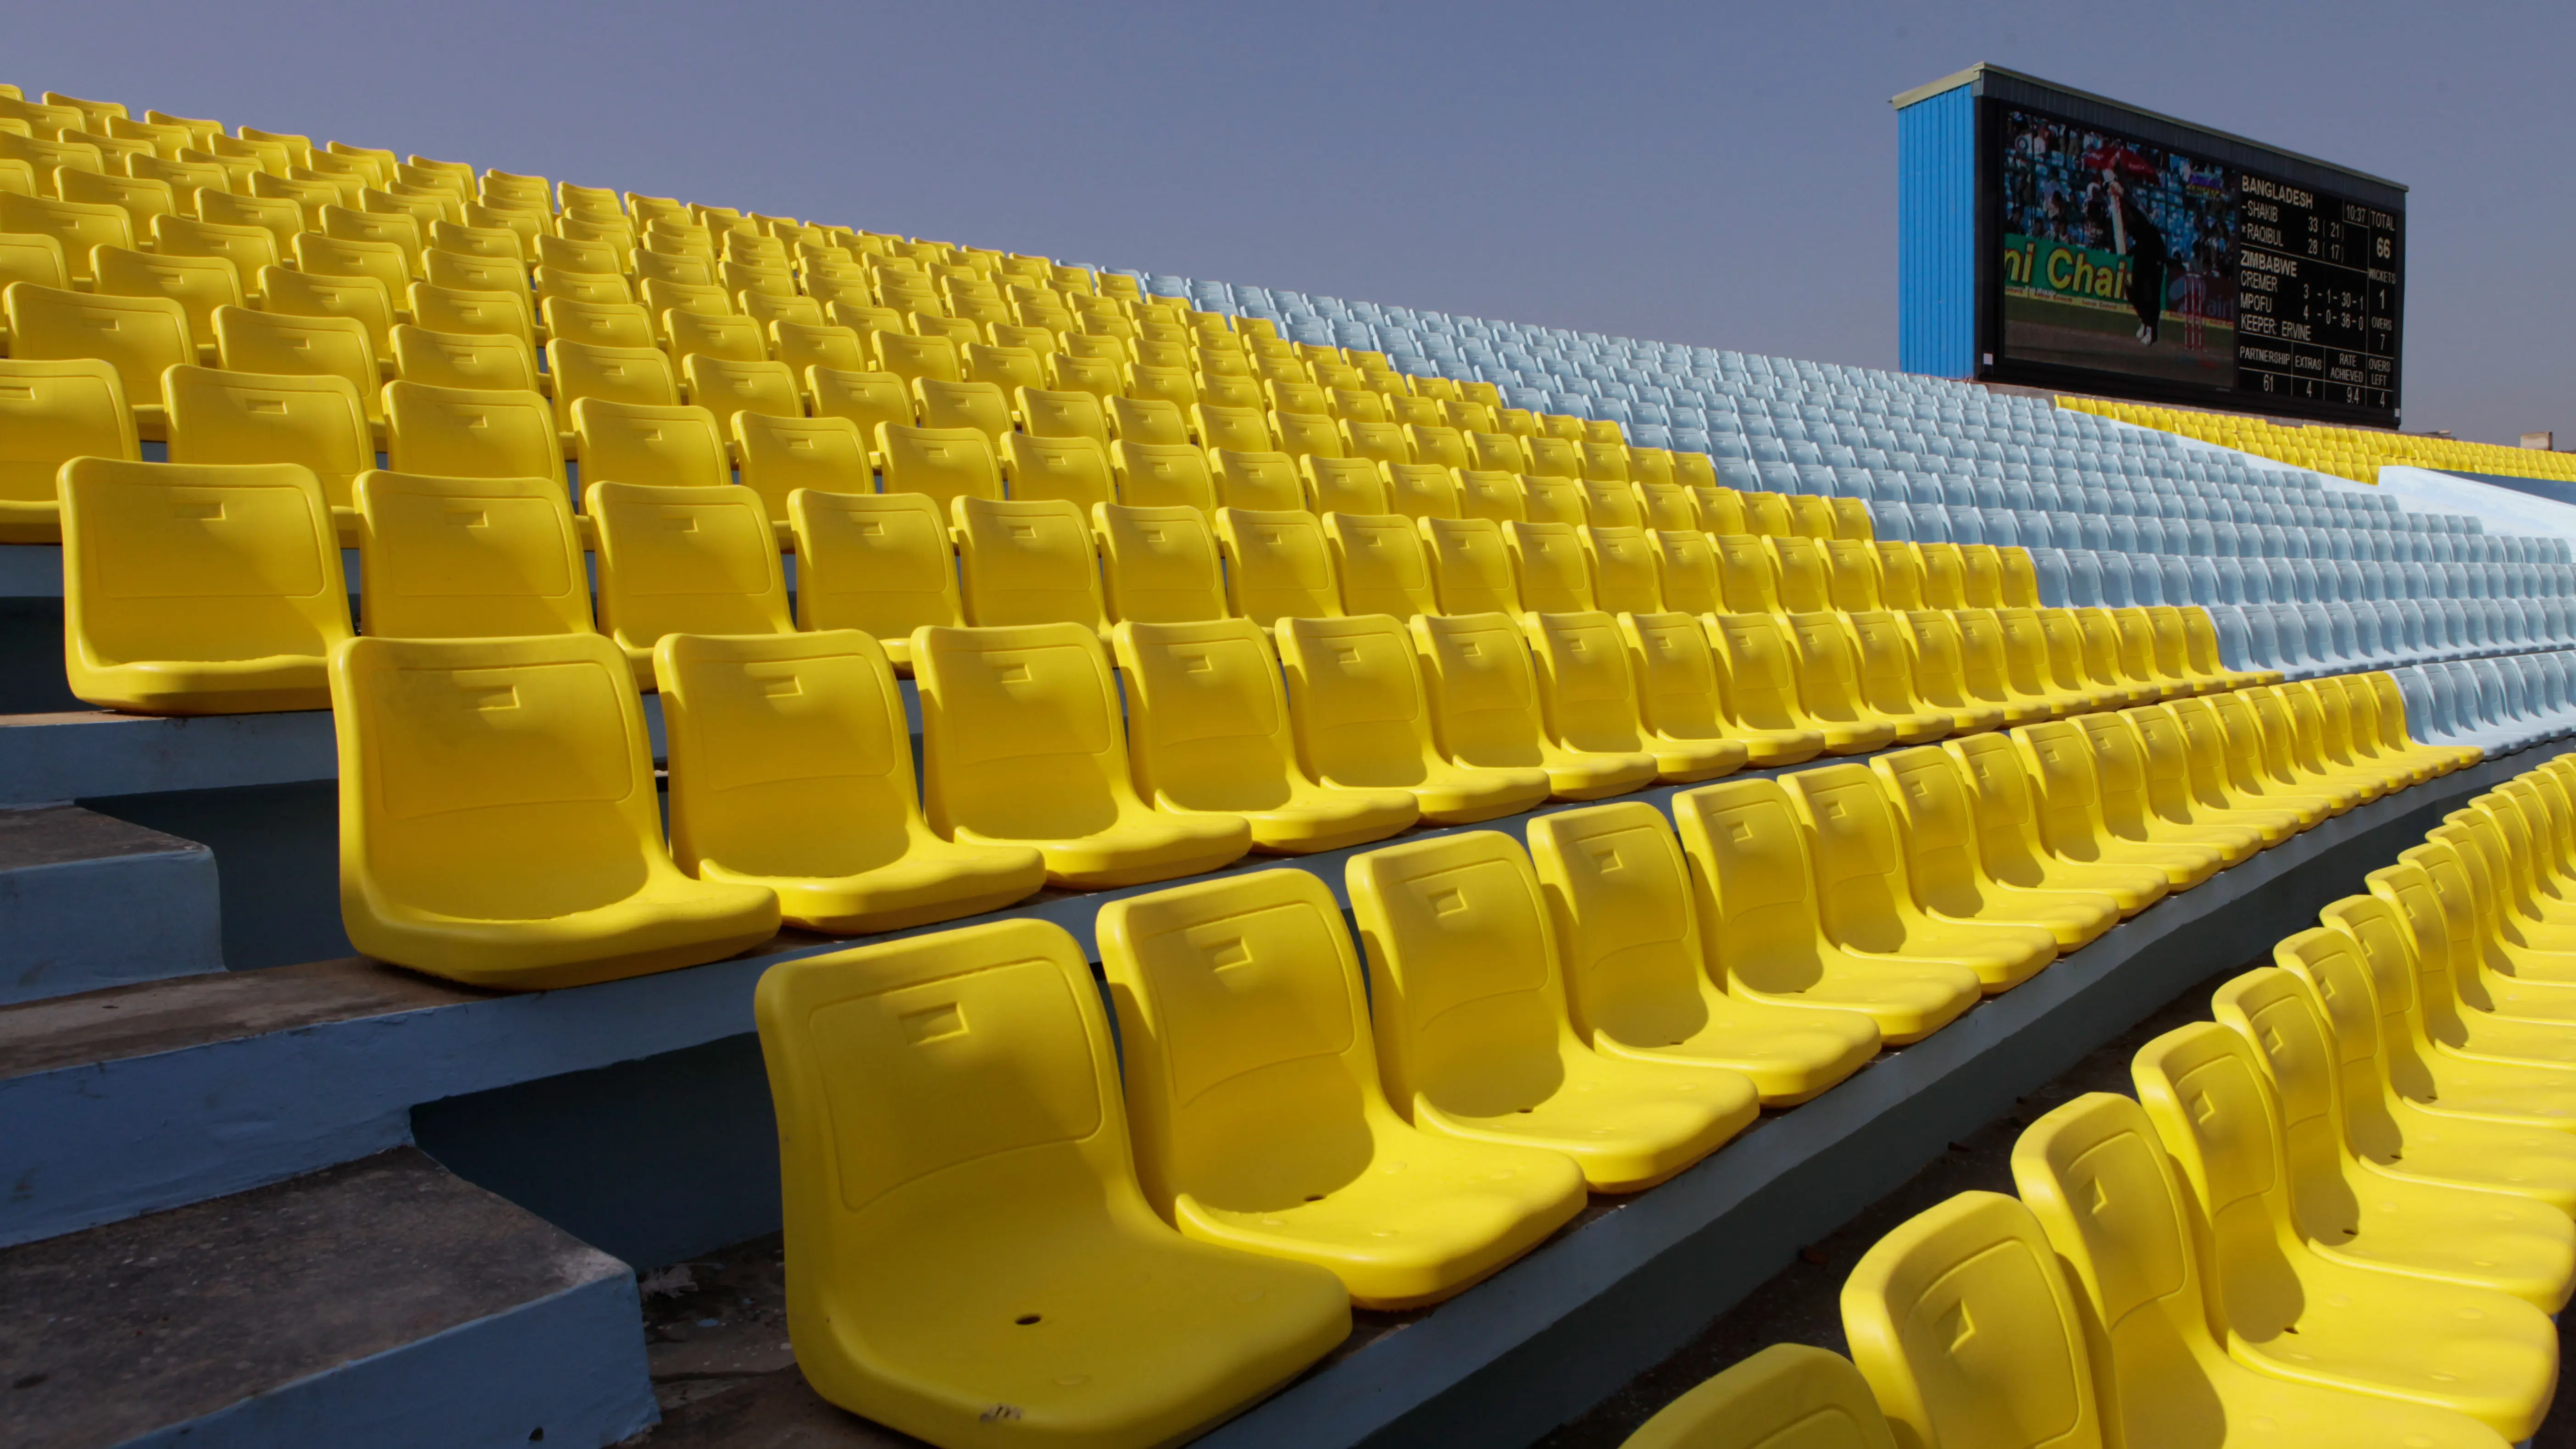 Сиденье для стадиона. Сиденья на стадионе. Сидения складные для стадиона. Стадион с желтыми сиденьями. Пластмассовое сиденье для стадионов са 015.